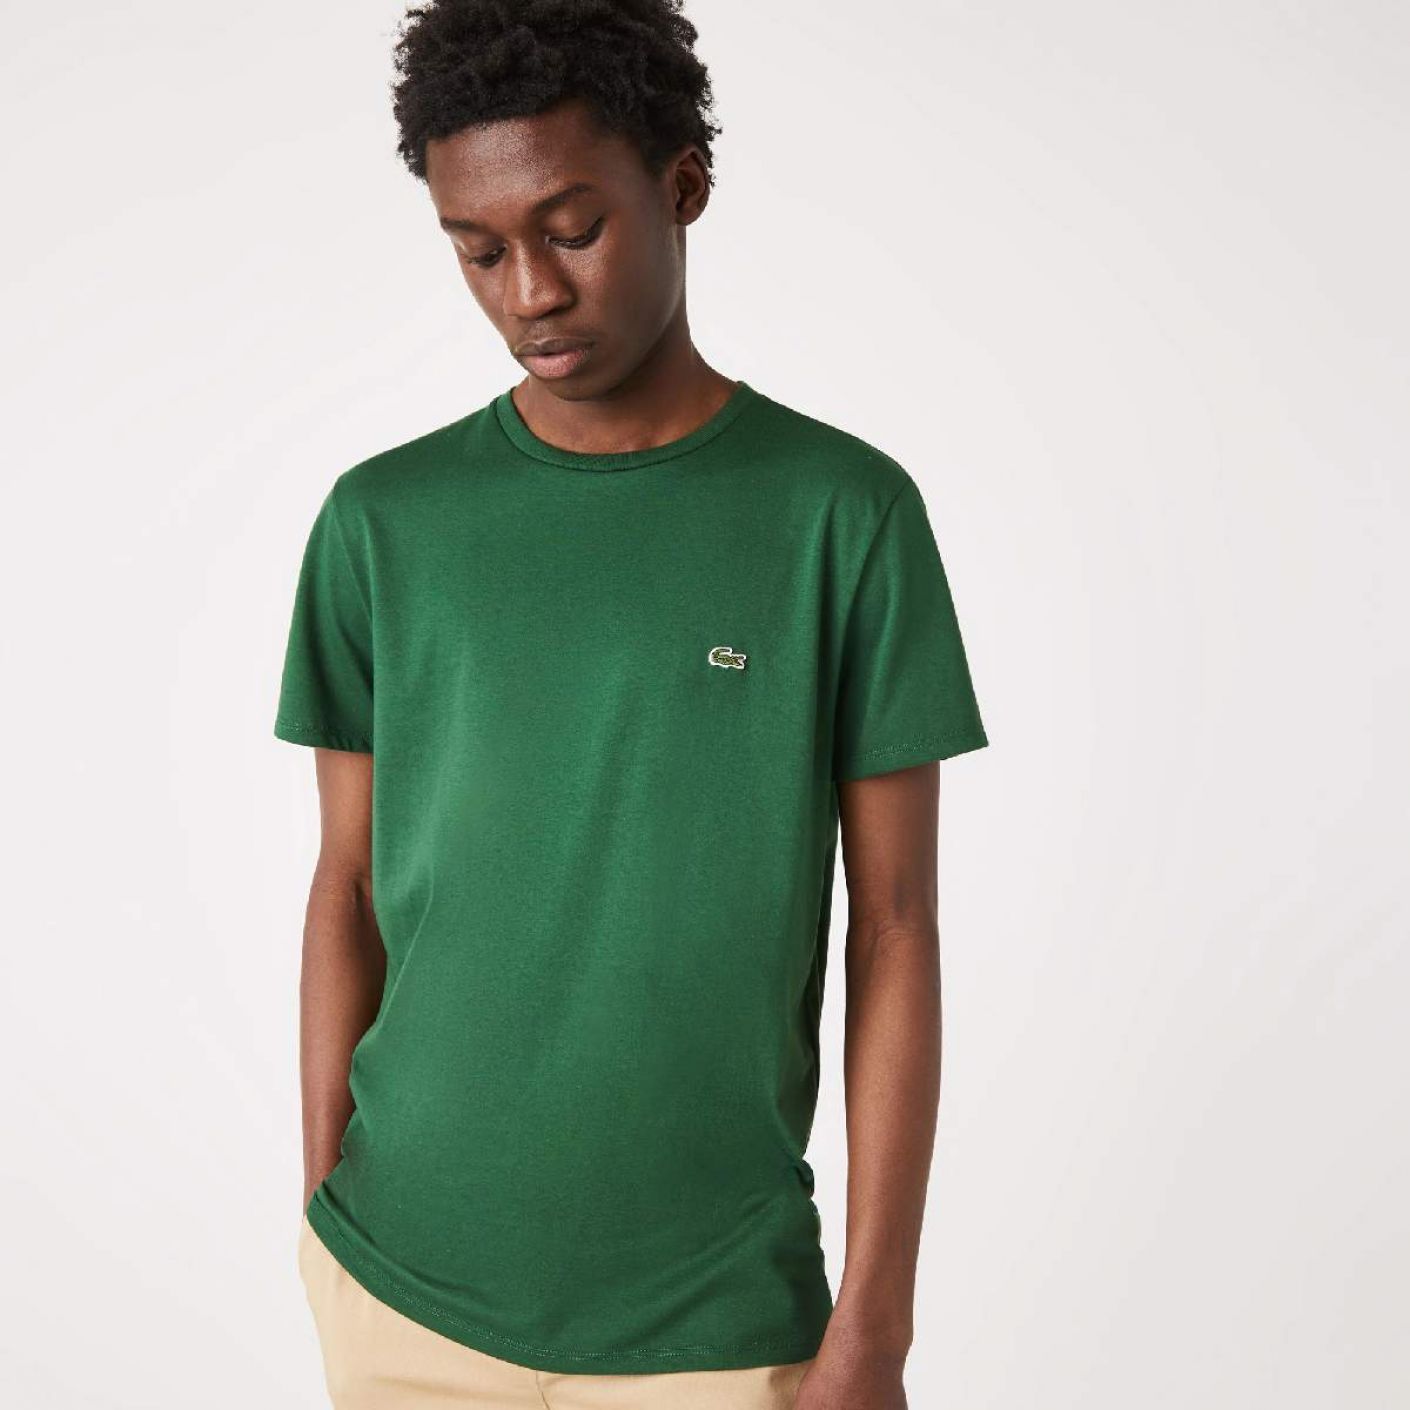 Lacoste T-shirt a Girocollo in Cotone Pima Verde